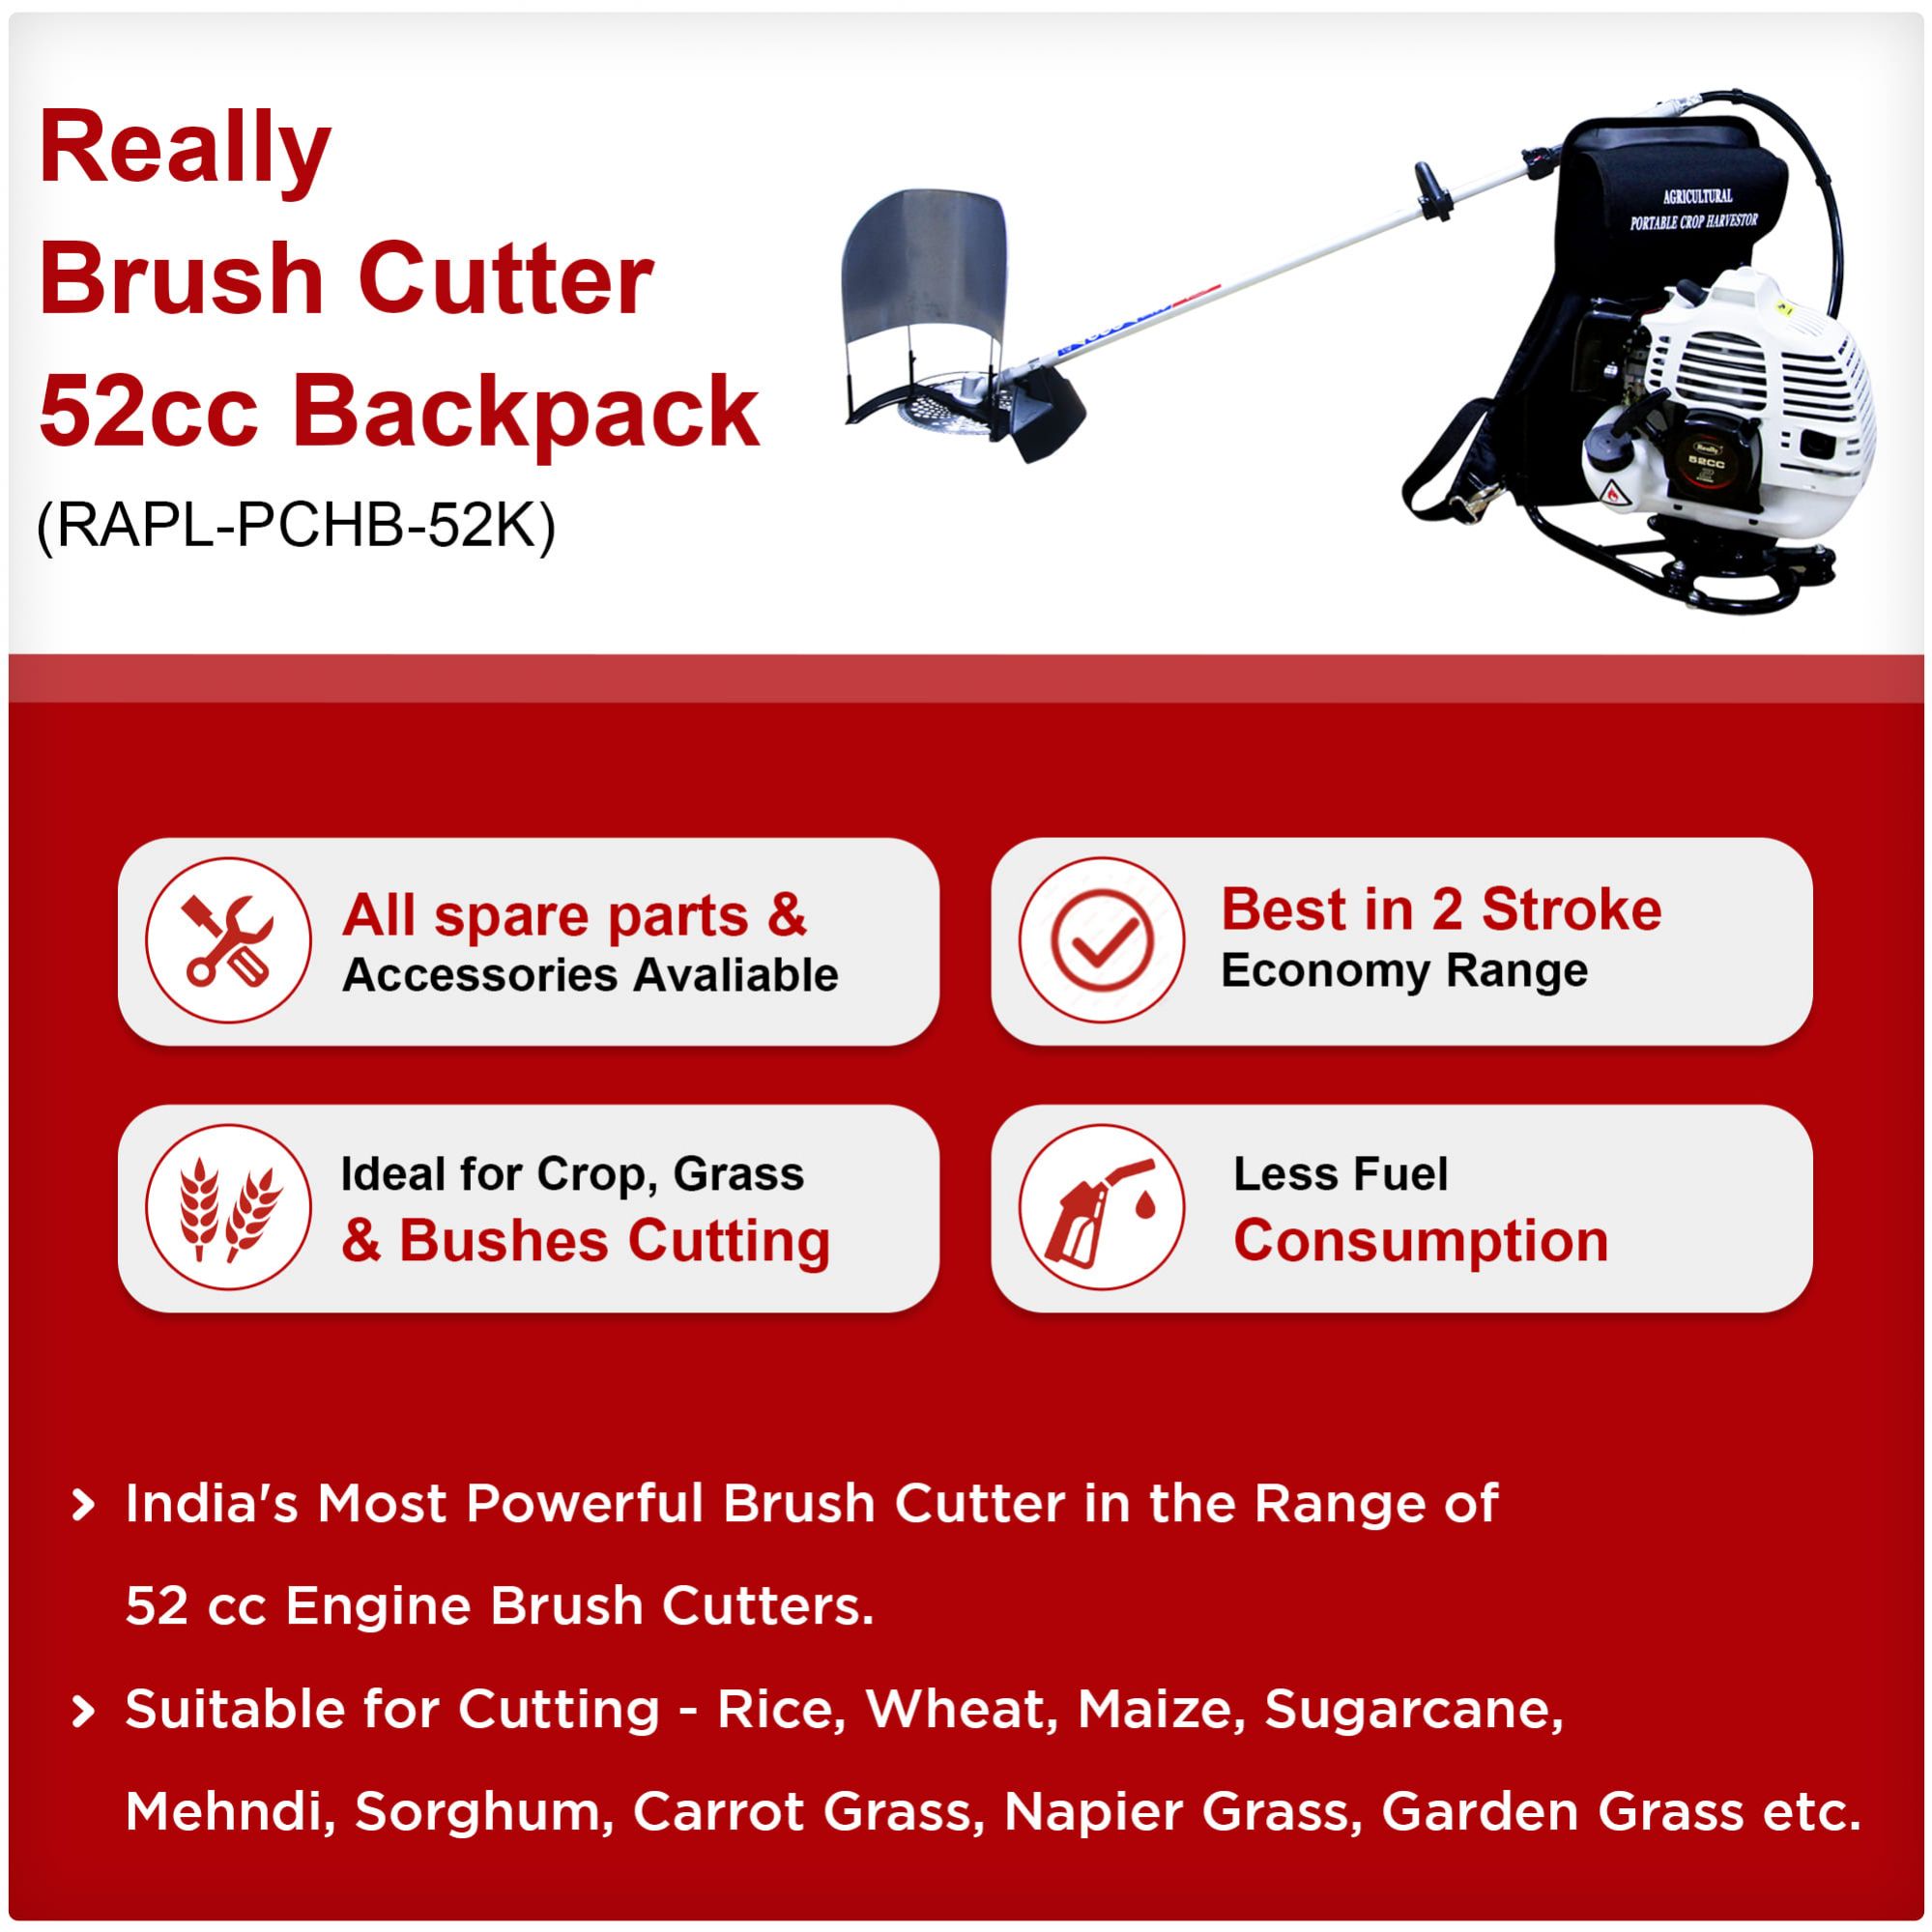 Really Brush Cutter 52cc 2 Stroke Backpack (RAPL-PCHB-52K)